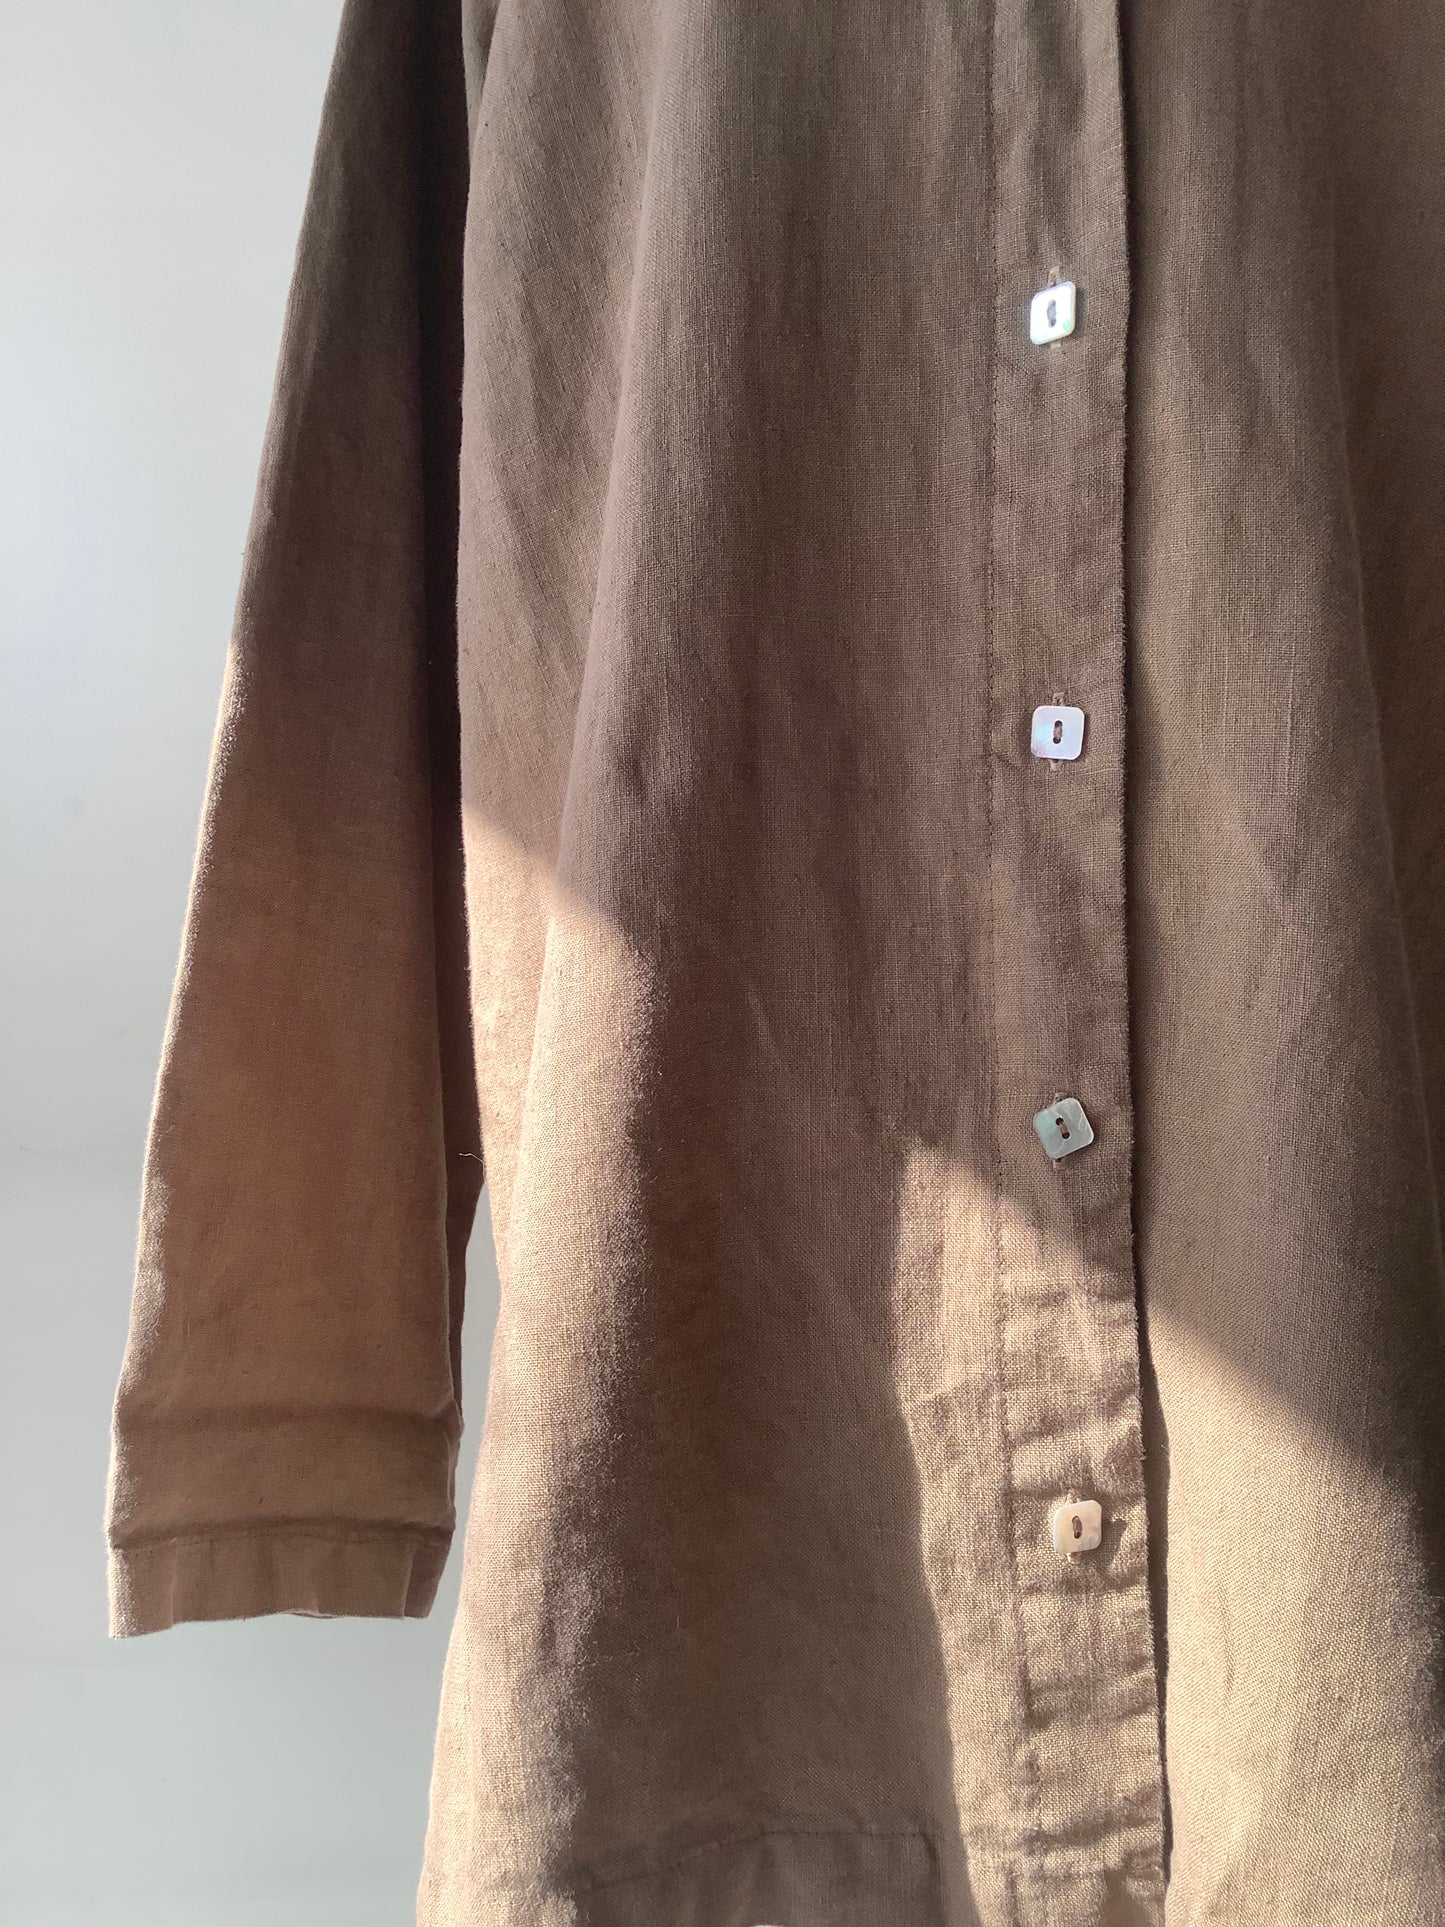 Brown linen long top